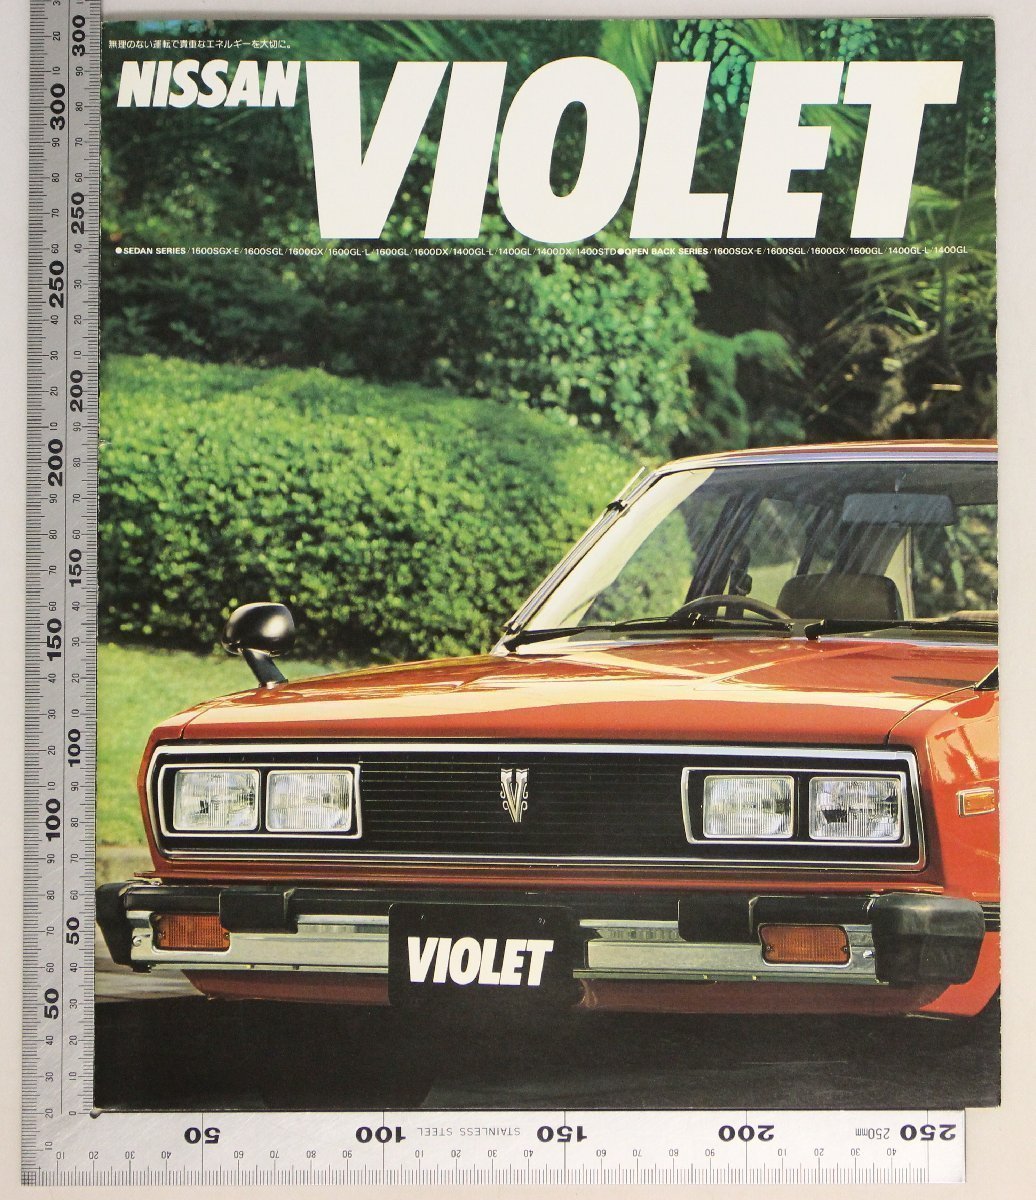 自動車カタログ『NISSAN VIOLET』昭和54年6月 日産自動車 補足:ニッサンバイオレット1600・1400シリーズ4リンクコイル式リヤサスペンション_画像1